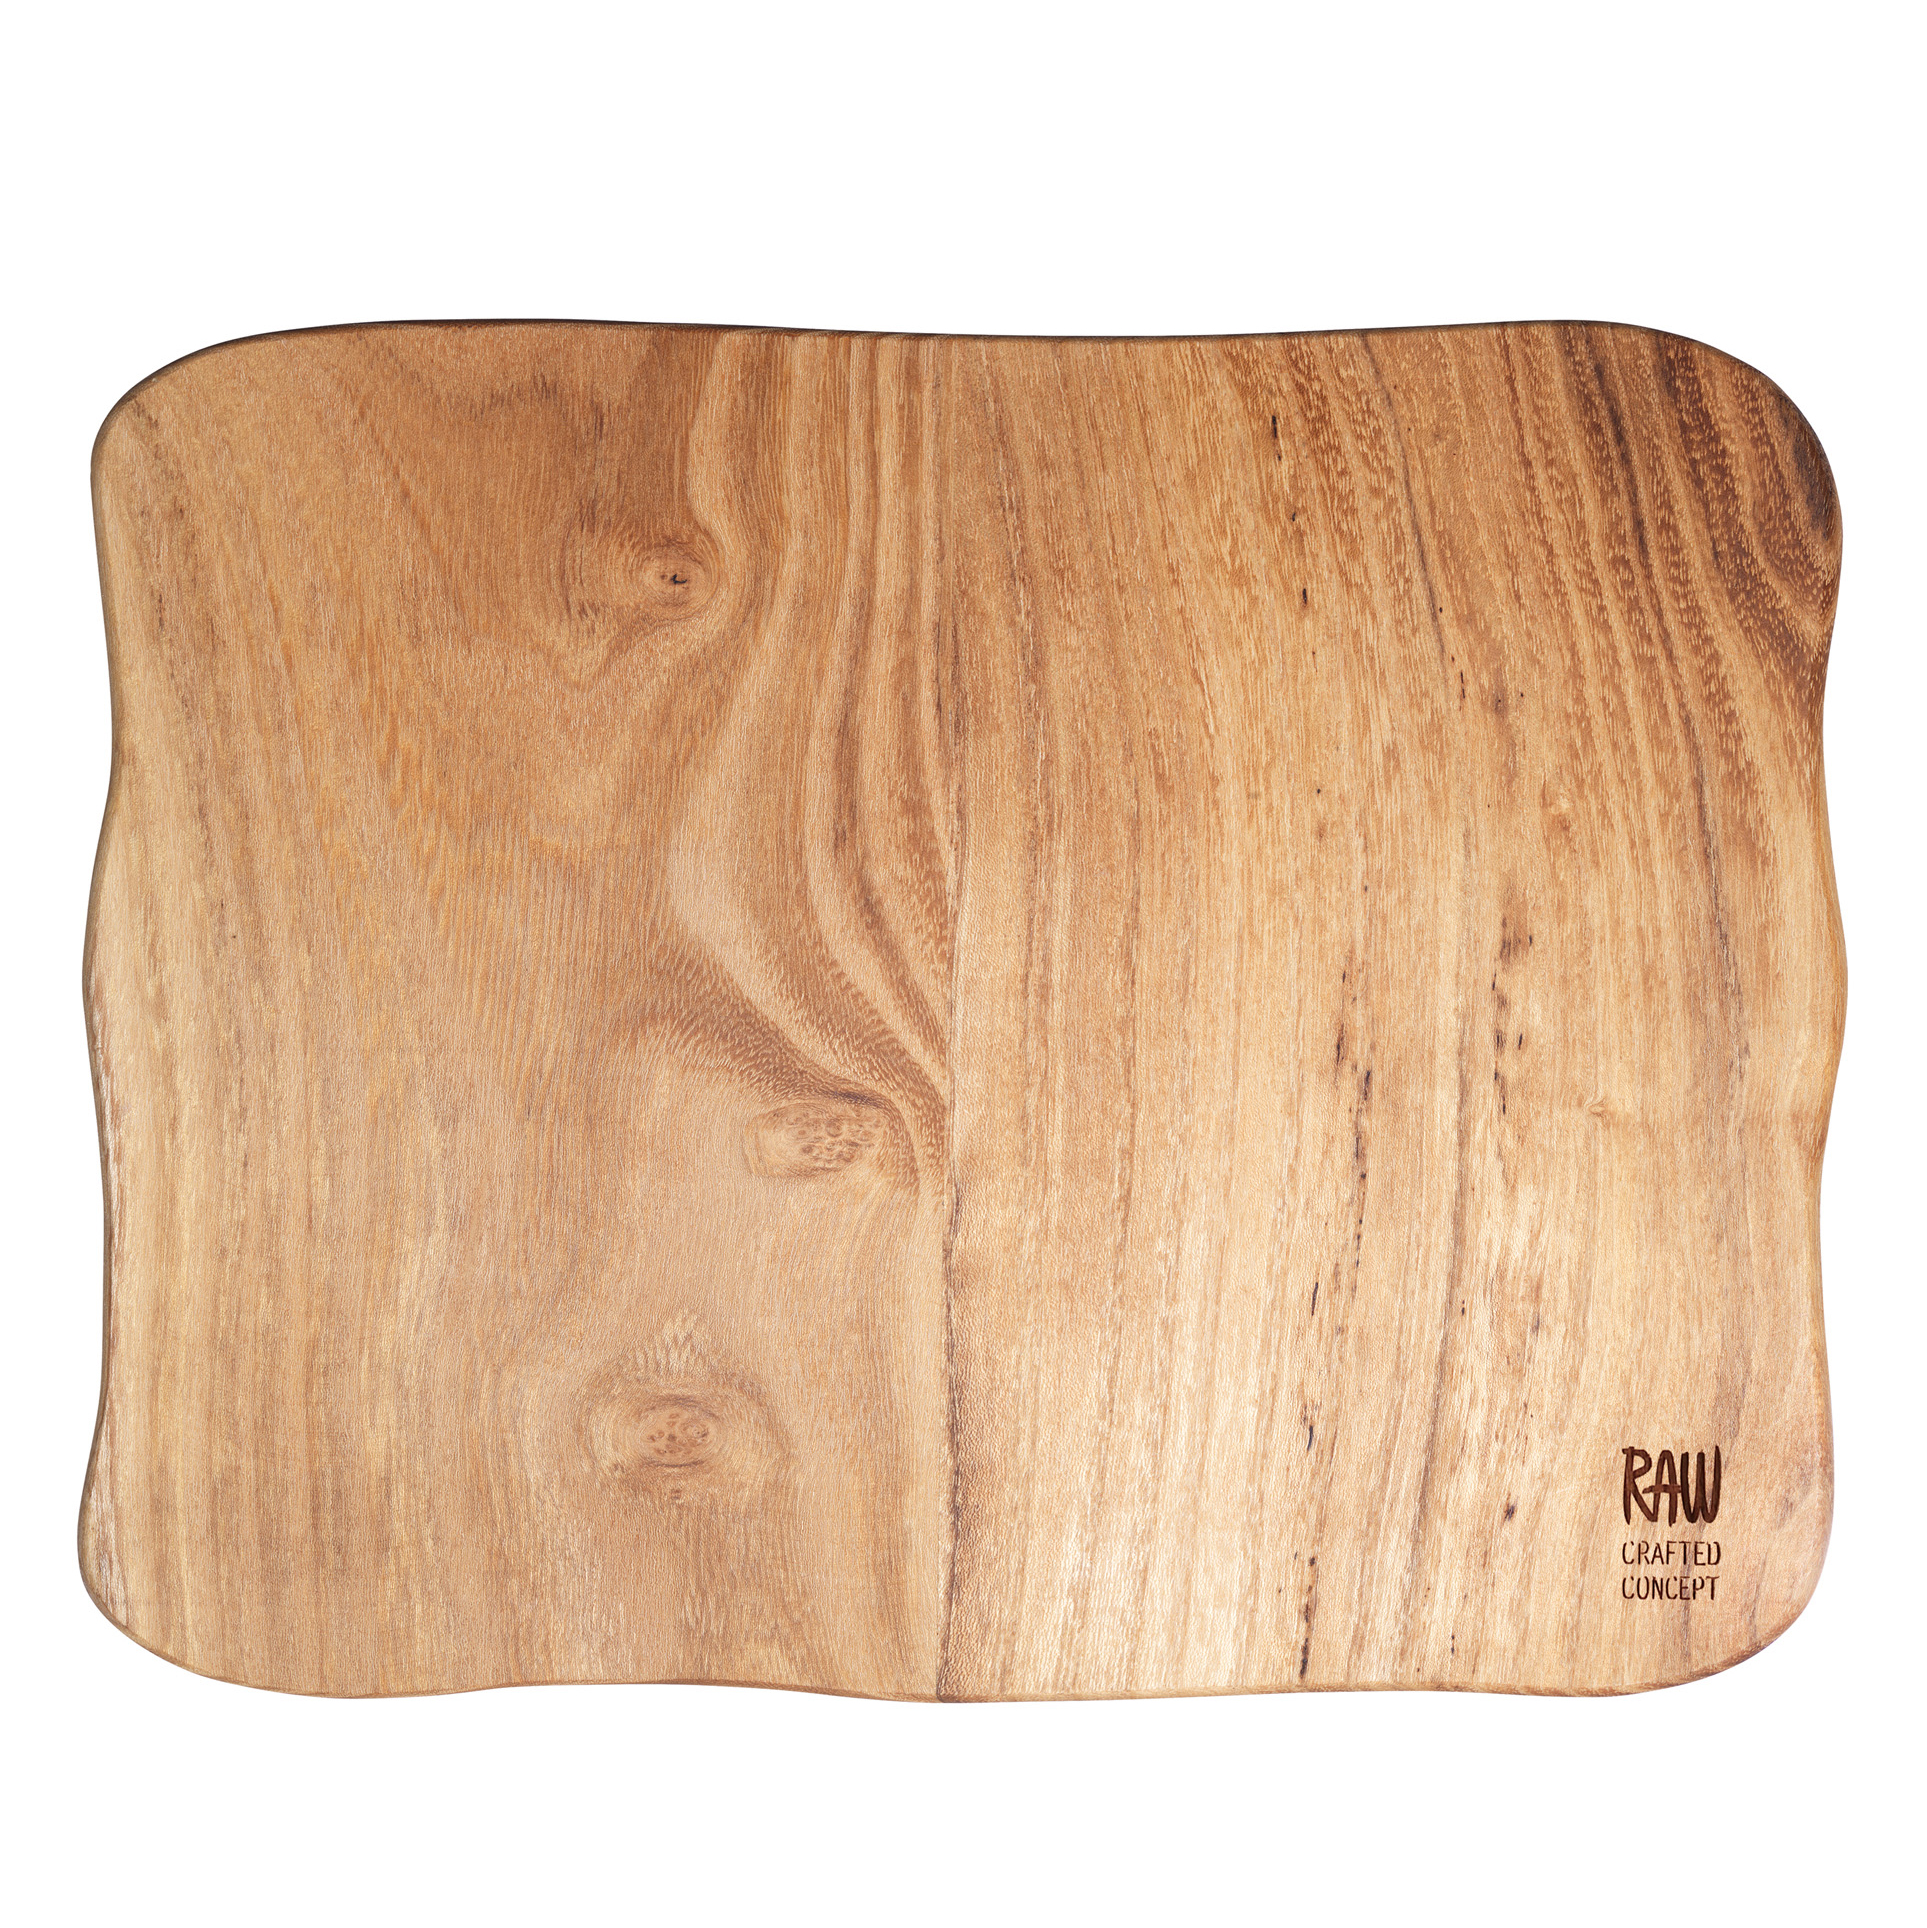 Raw cutting board from Aida